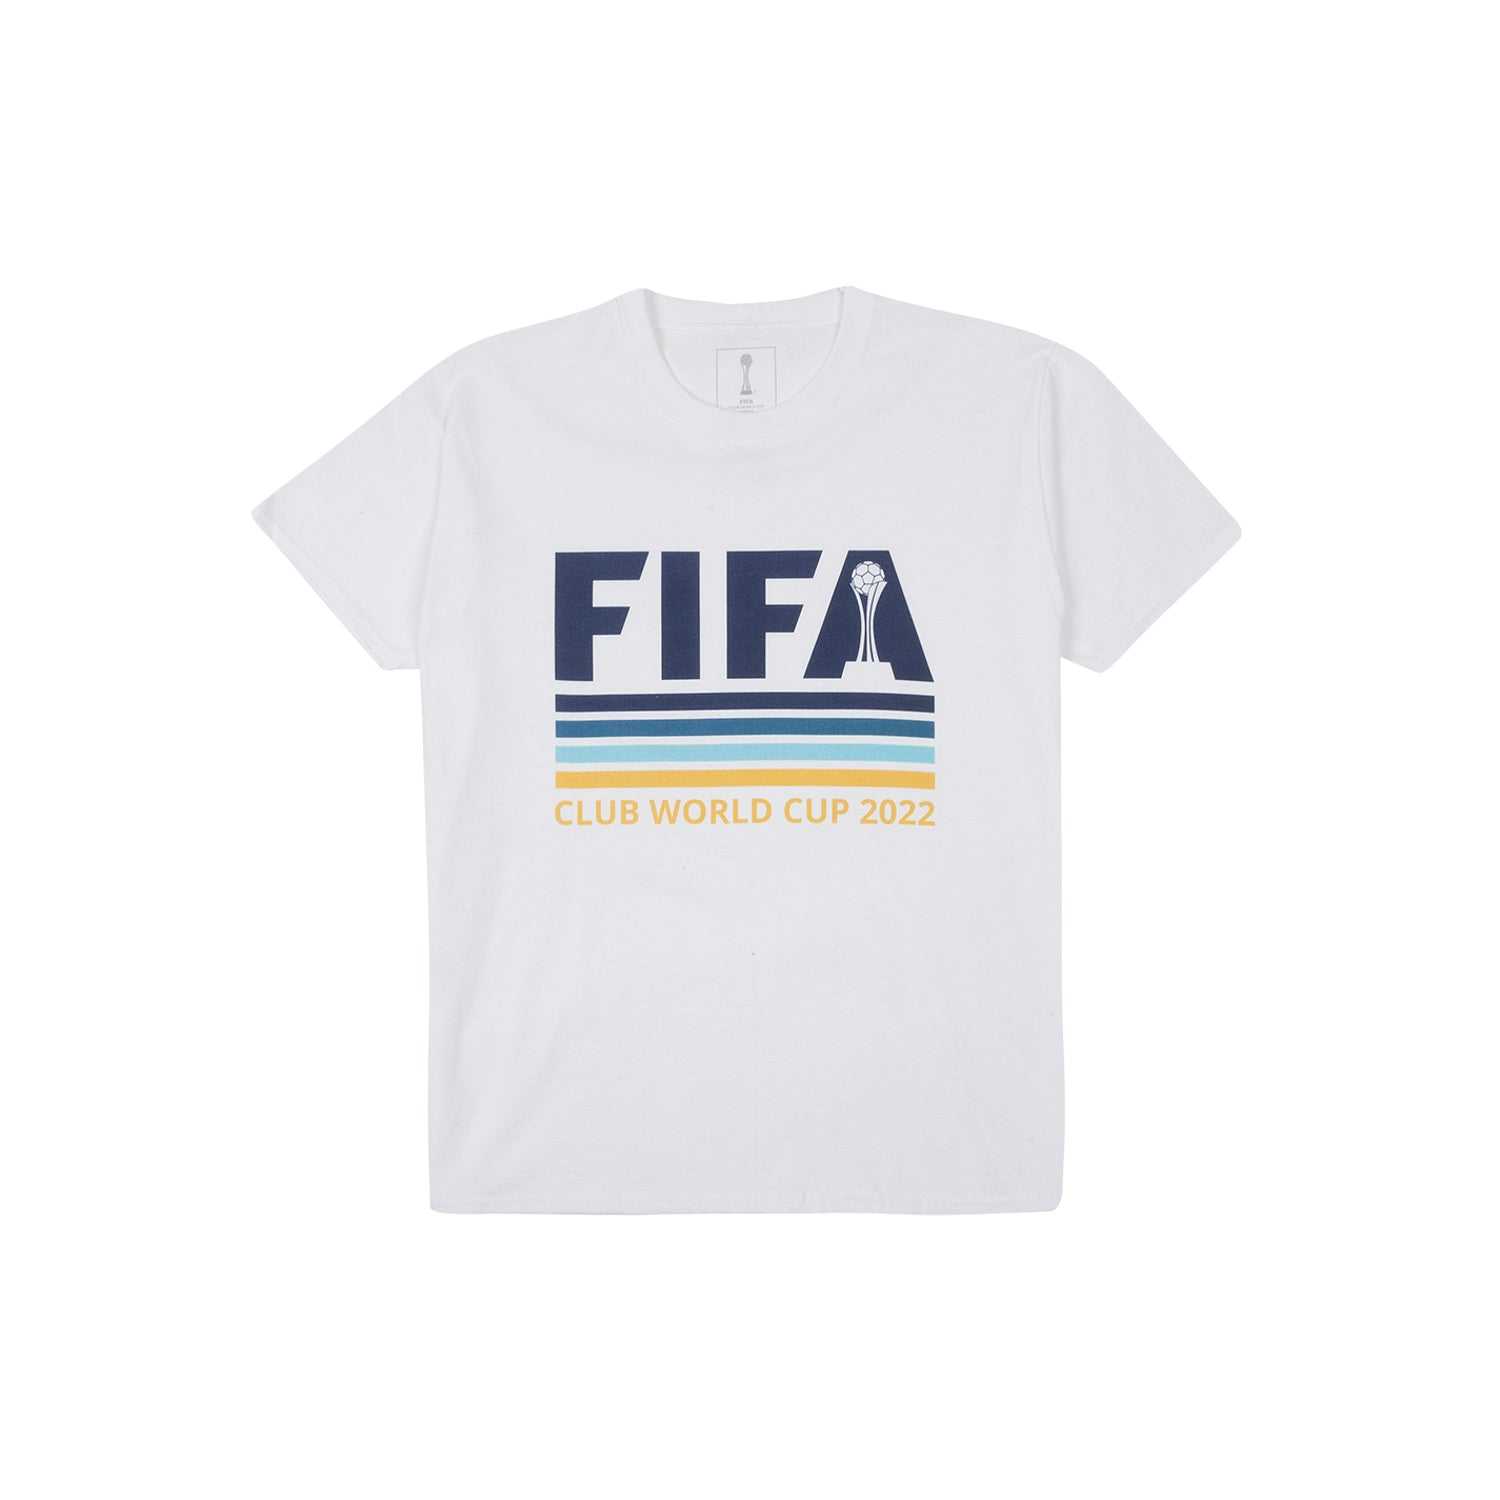 FIFA Club World Cup 2022 White T-Shirt - Mens